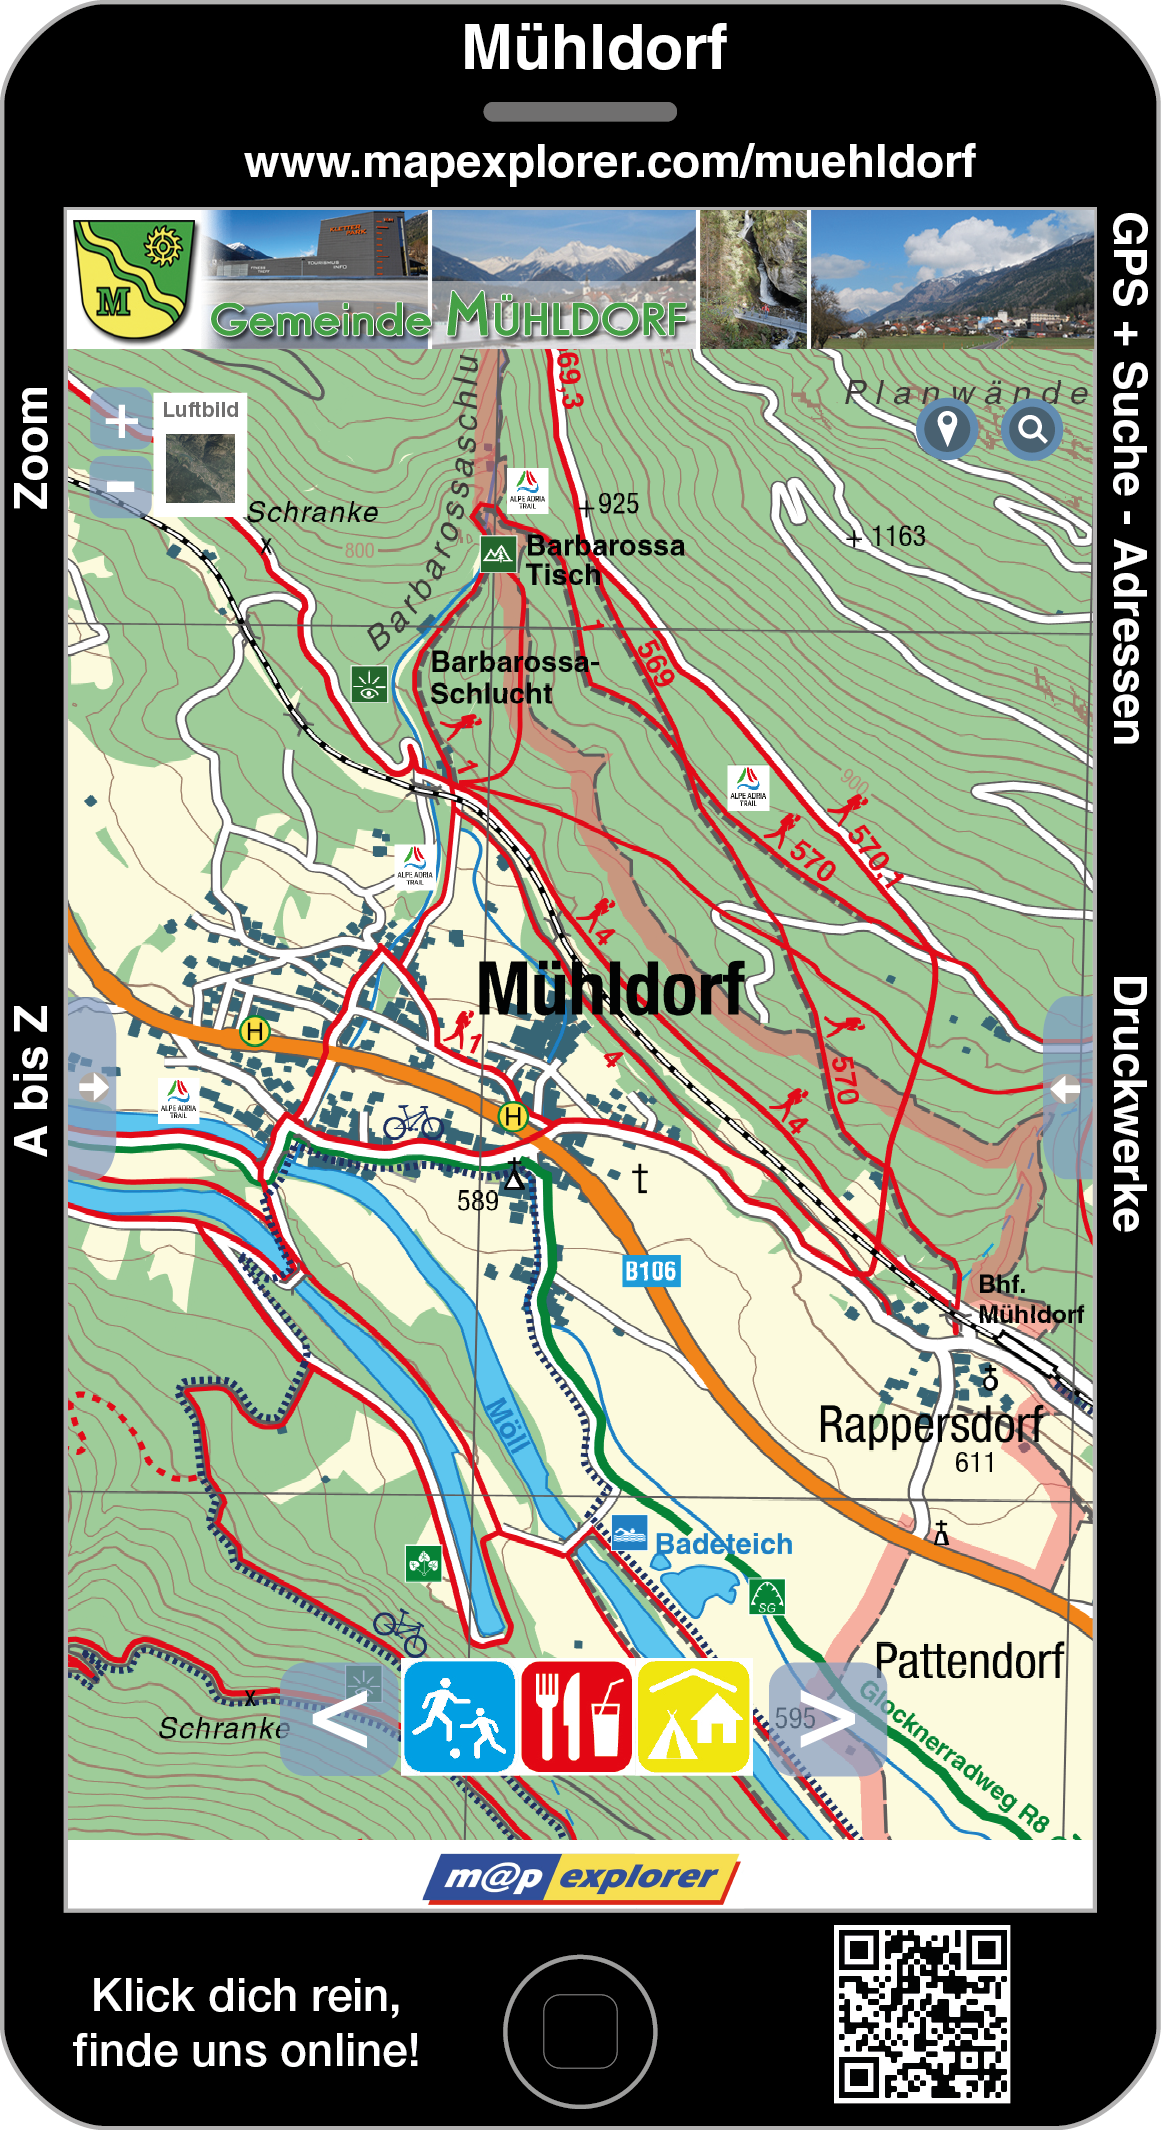 Ortsplan von Mühldorf auf mapexplorer.at